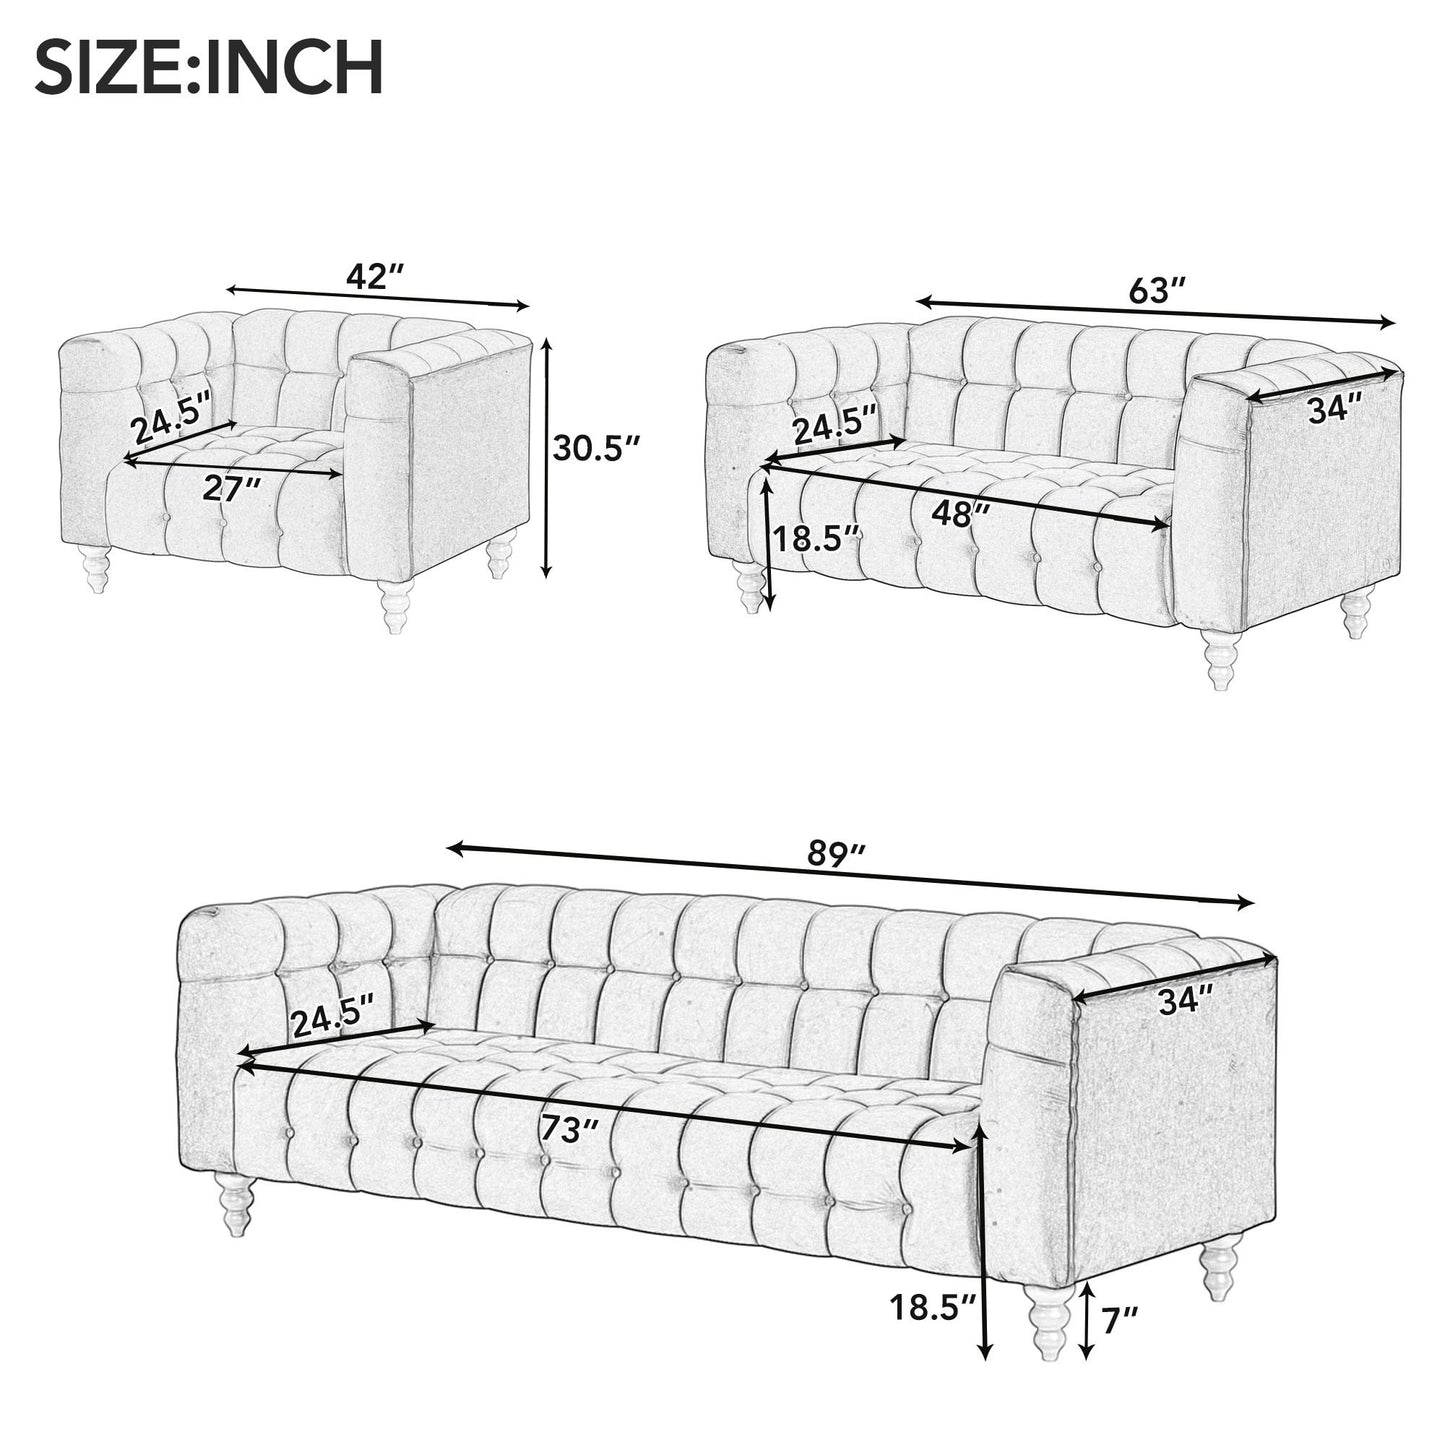 zuli 3-piece sofa set, blue